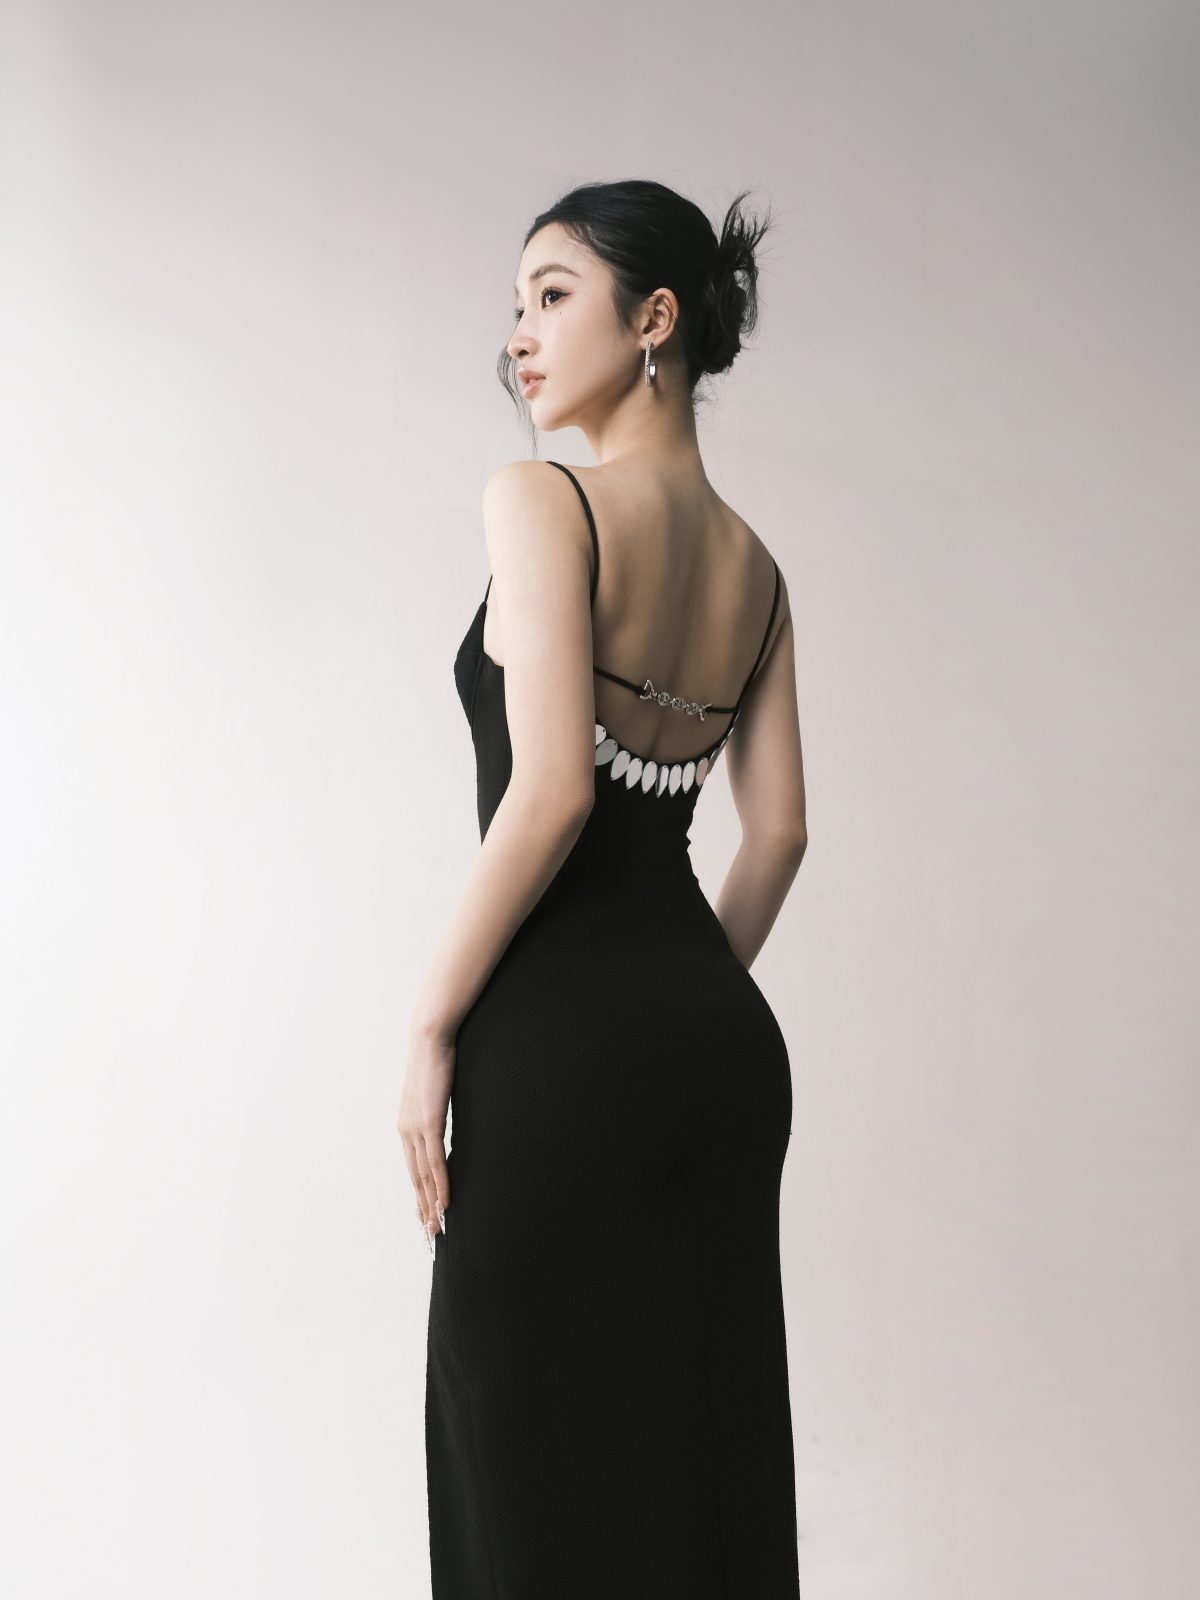 Không còn ngọt ngào, Á hậu Phương Nhi thử sức với gu thời trang phá cách - Ảnh 3.